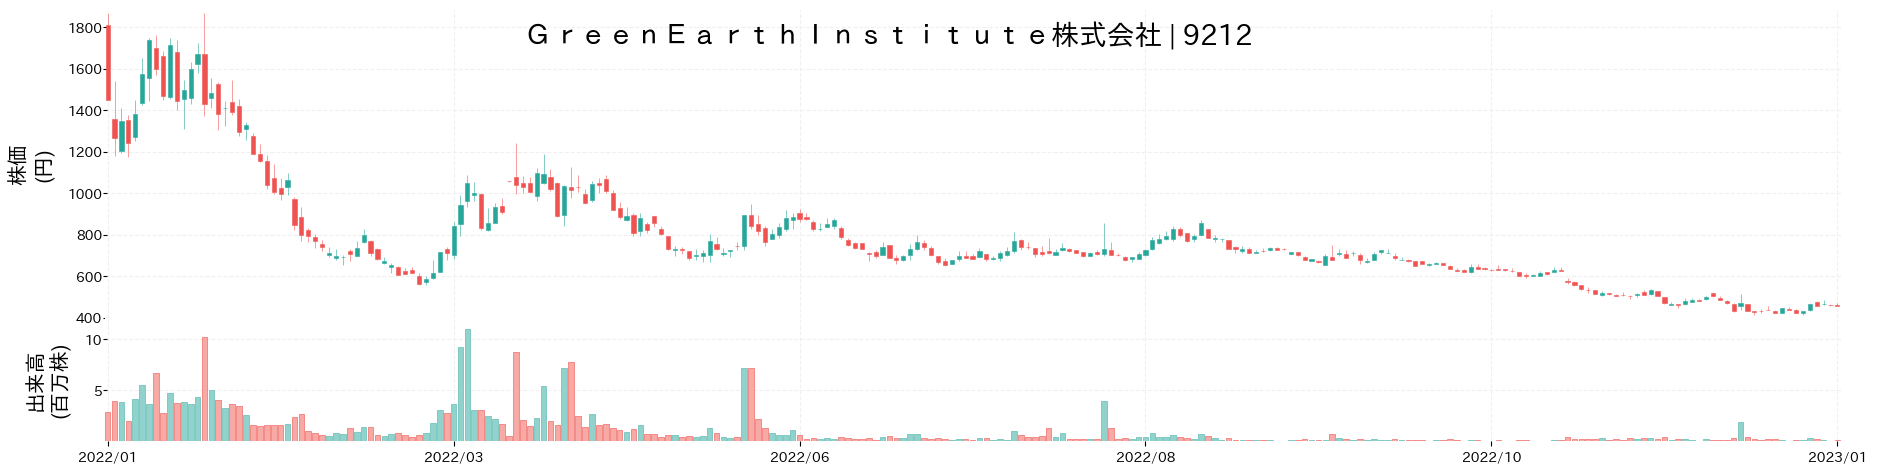 Green Earth Instituteの株価推移(2022)